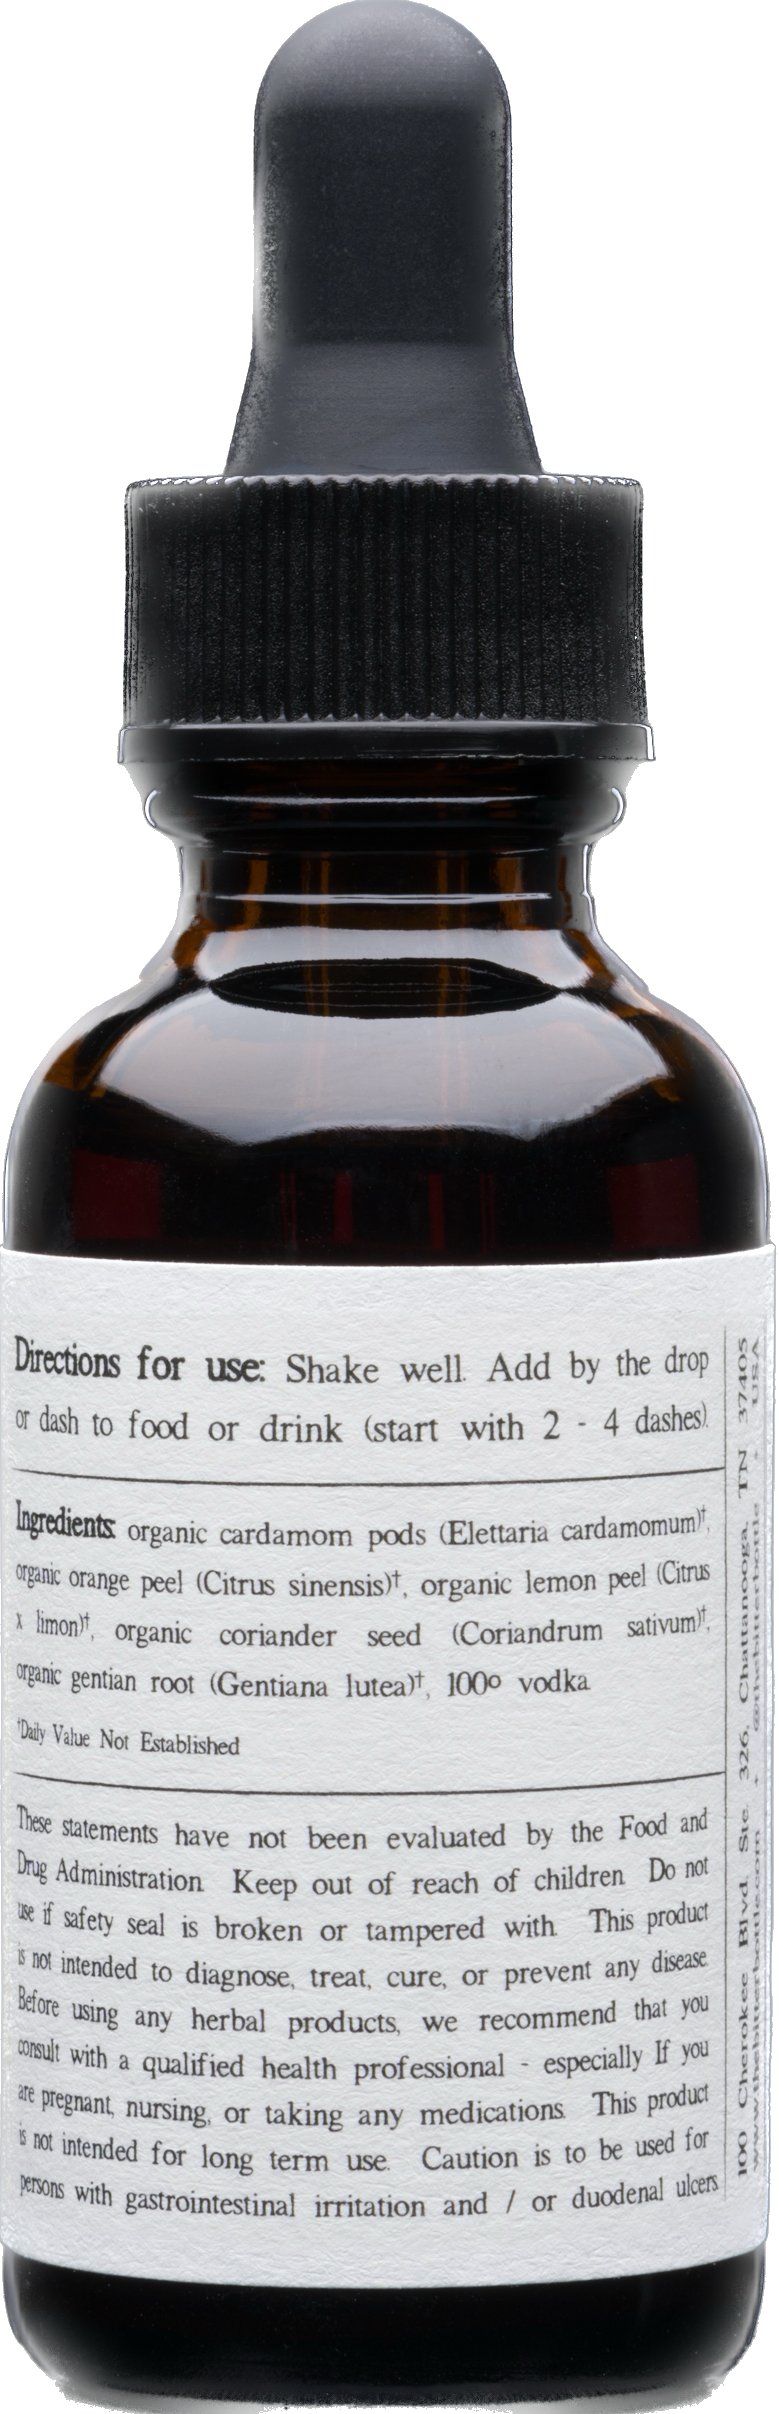 The Bitter Bottle: Cardamom Bitters